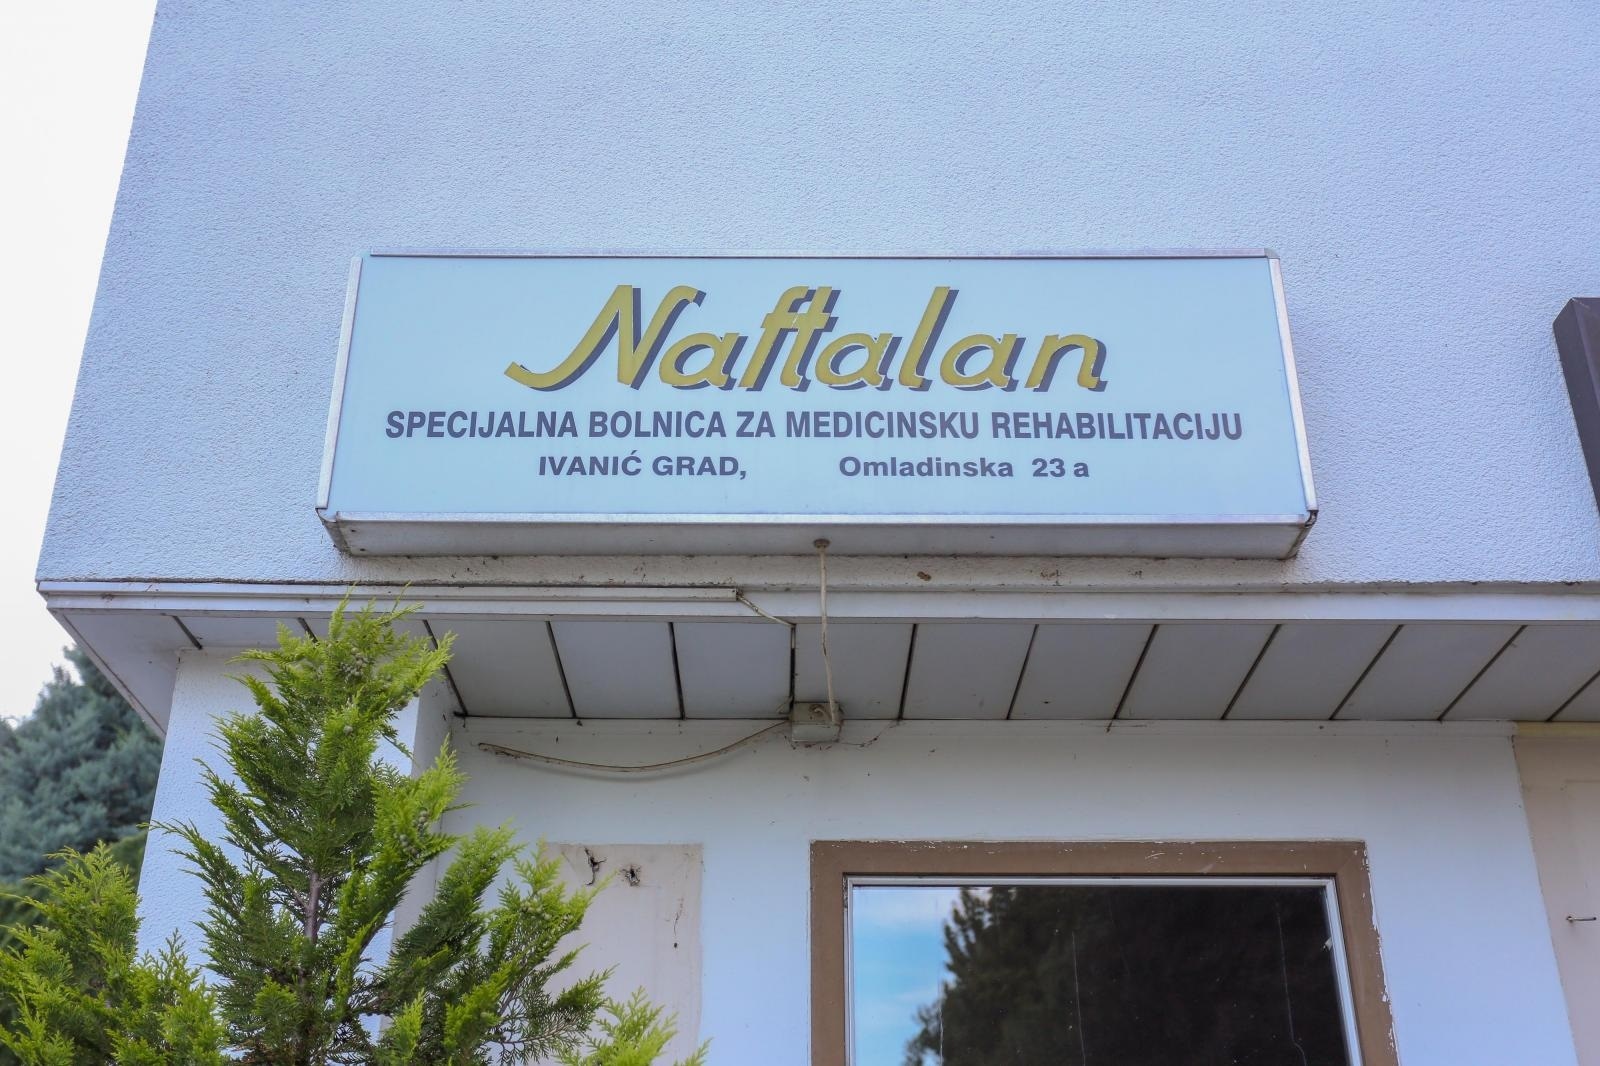 05.07.2018., Ivanic Grad - Naftalan, specijalna bolnica za medicinsku rehabilitaciju.
Photo: Matija Habljak/PIXSELL